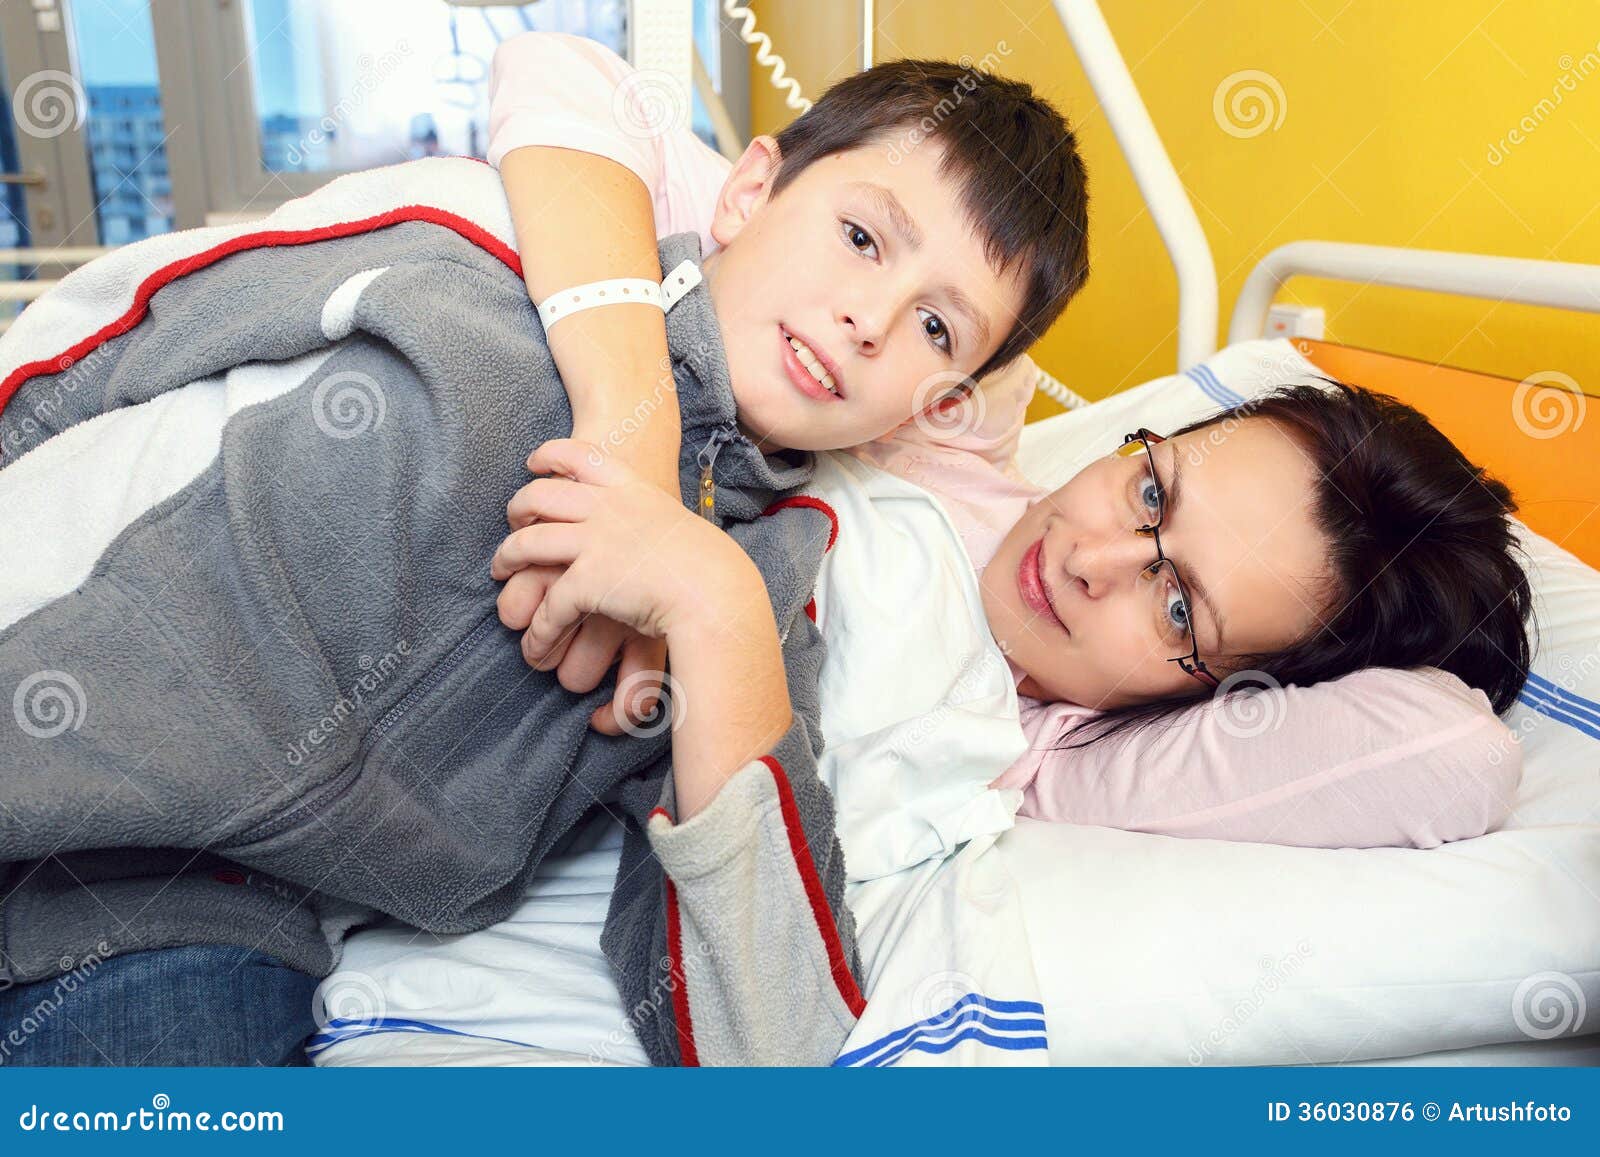 Мама помогла больному сыну. Сын в больнице. Мама с взрослым ребенком в больнице. Фото мама с сыном в больнице картинки. Мама с ребенком в больнице реальные фото.